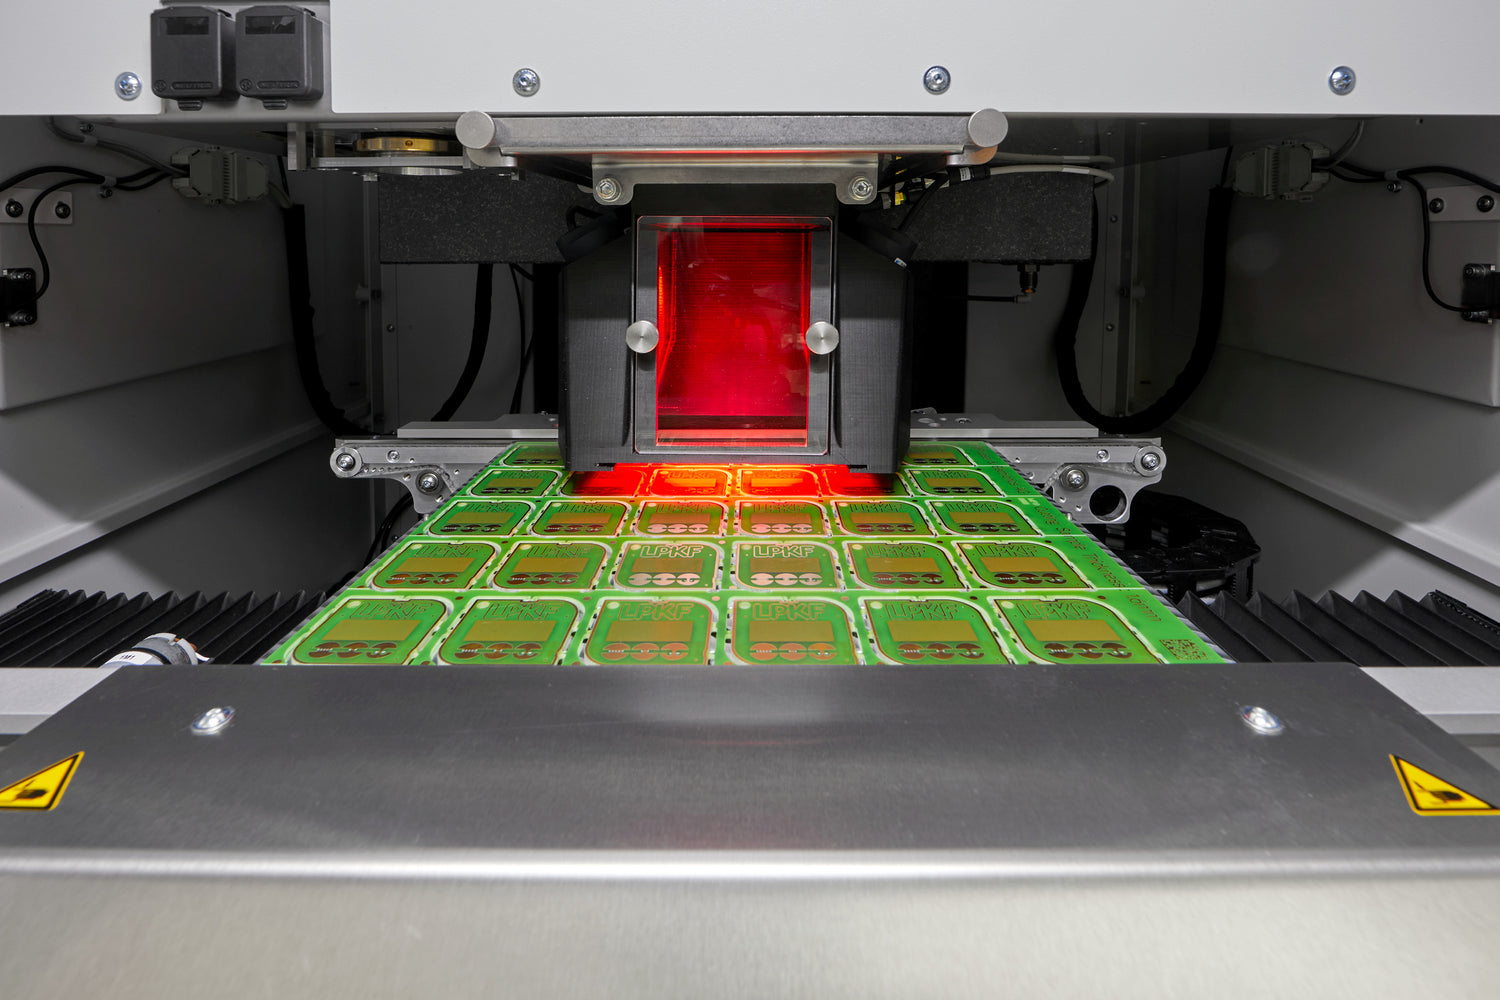 Tokimeku LPKF laser depaneling pcb prototyping stencil cutting system